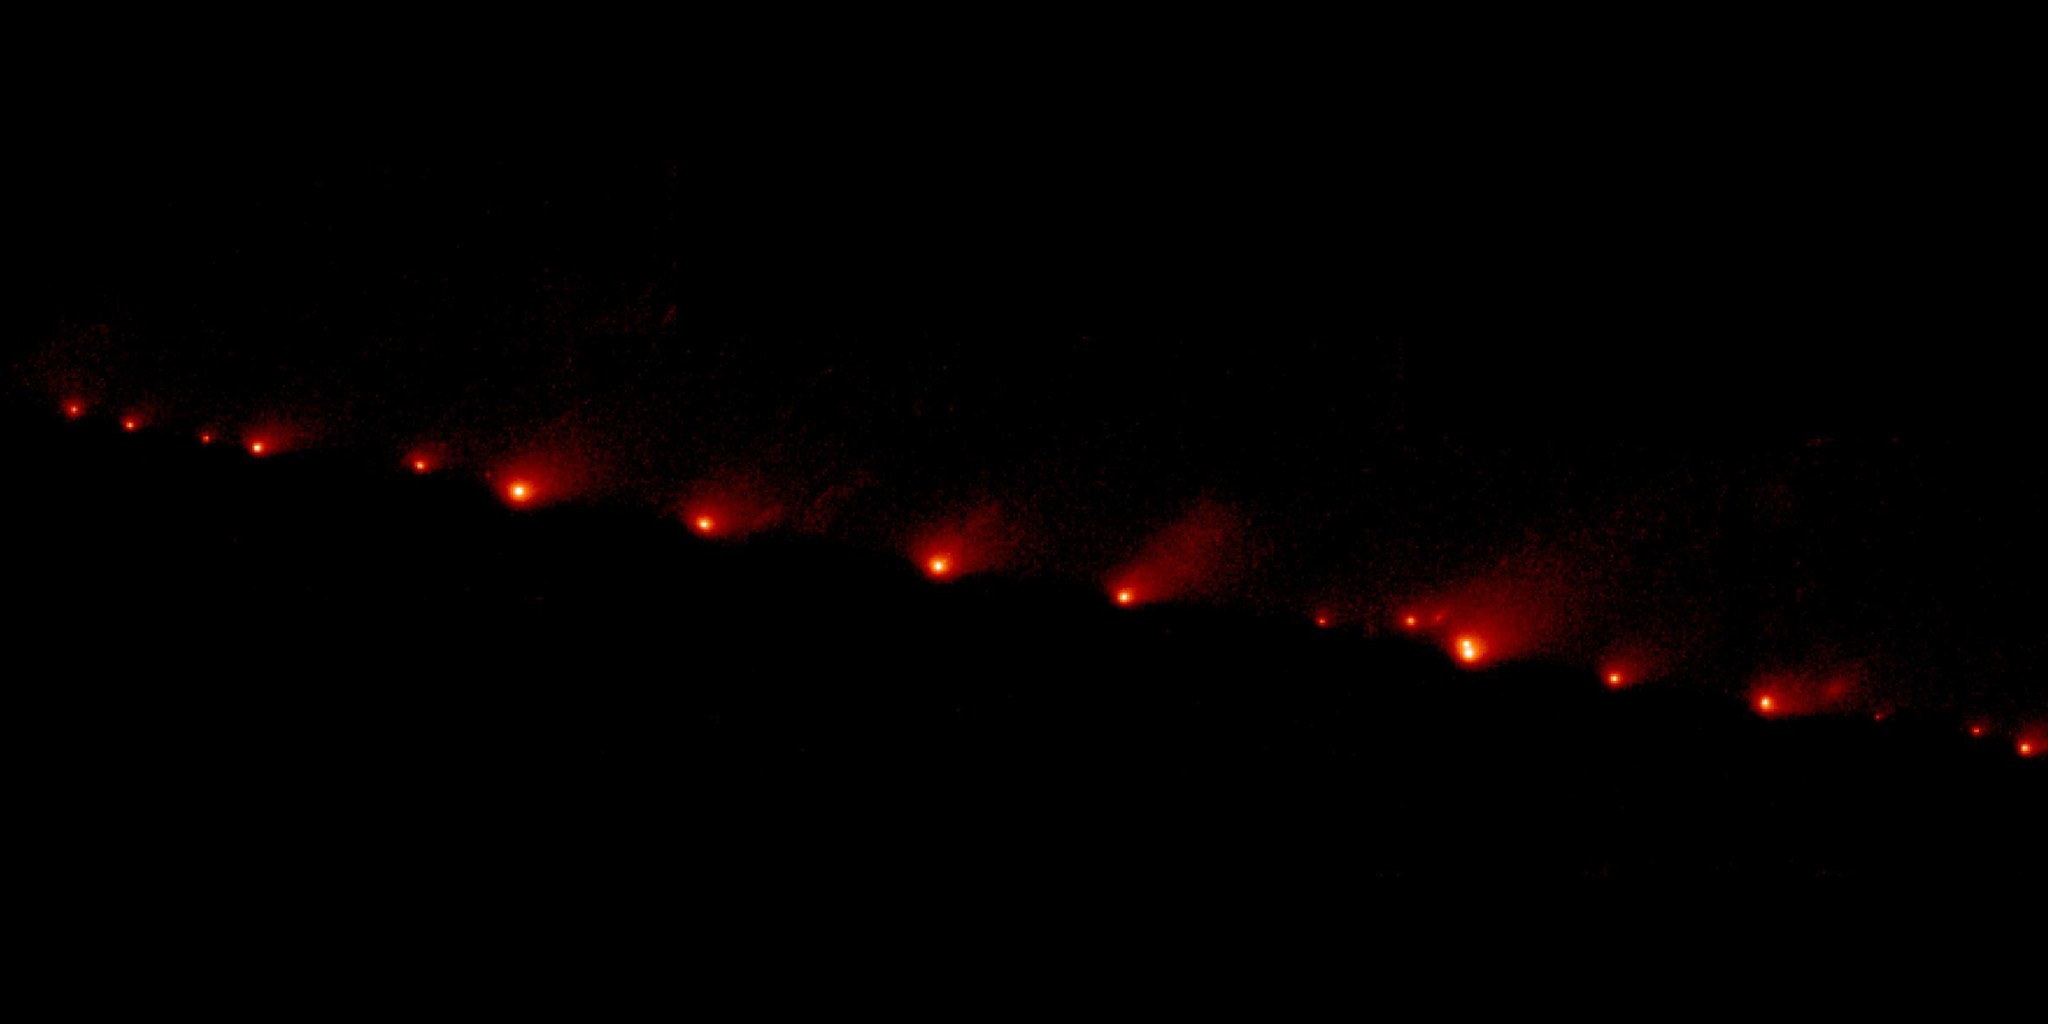 streak of red glowing objects on black